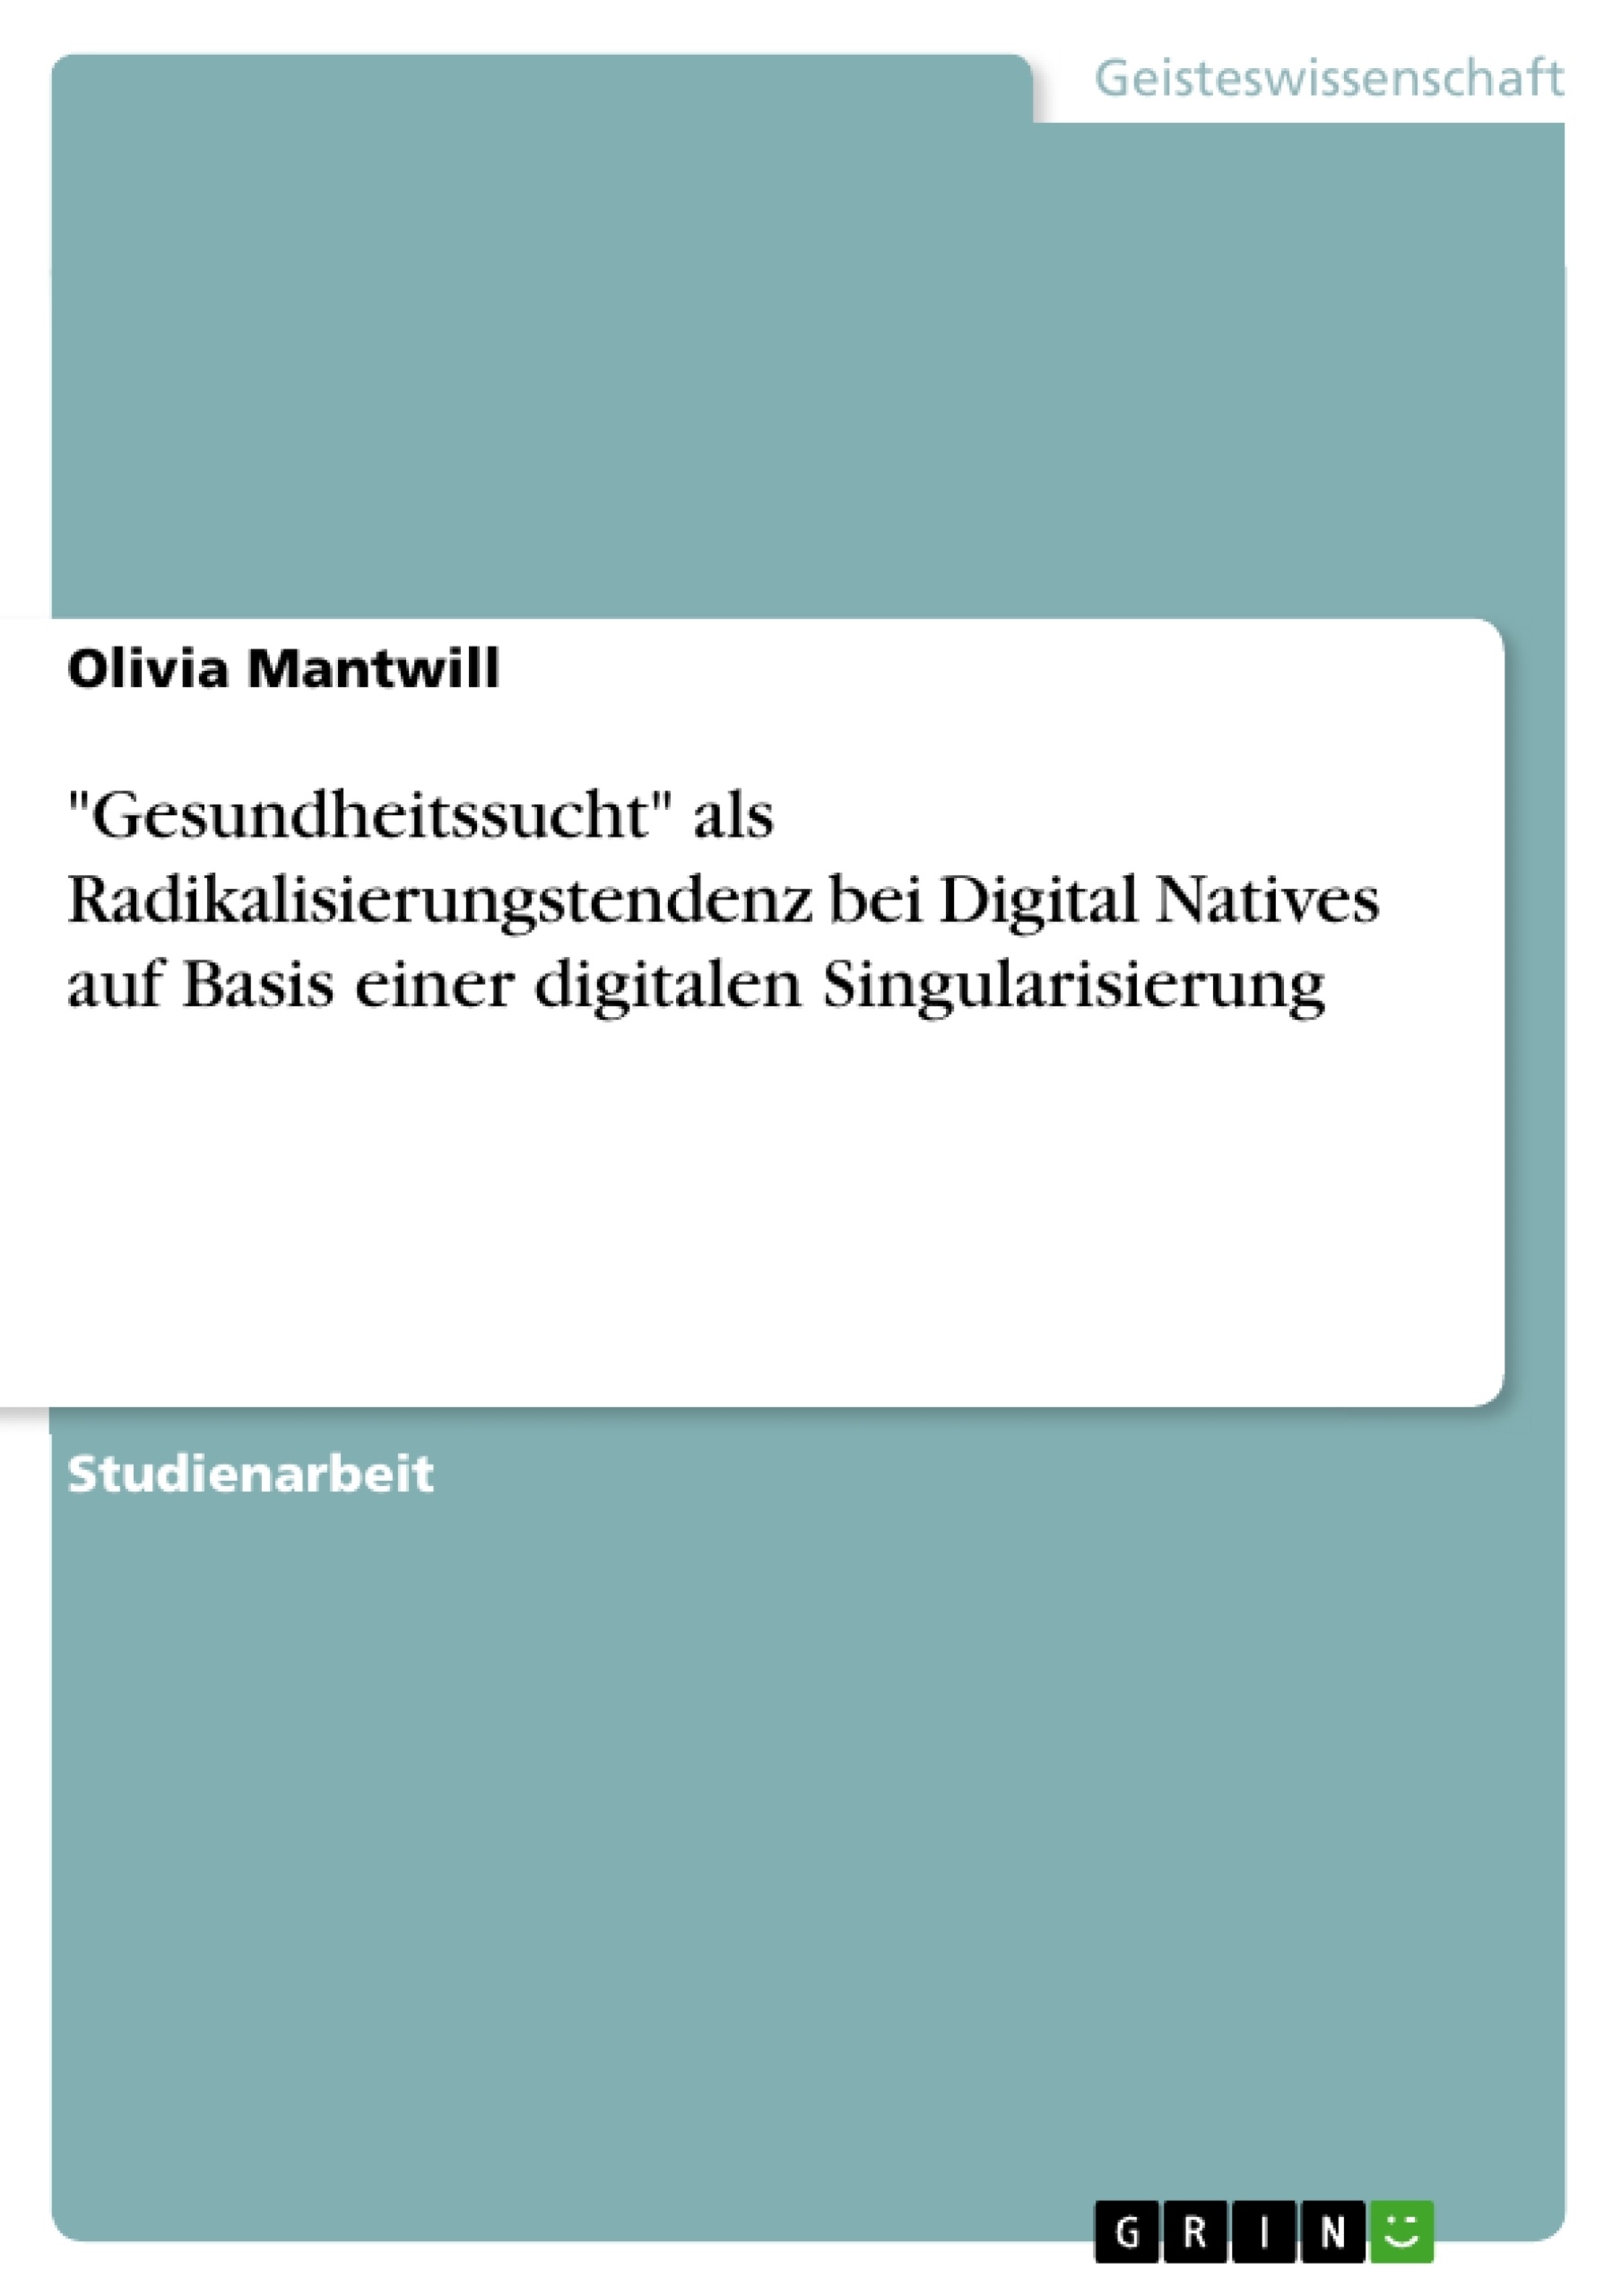 Title: "Gesundheitssucht" als Radikalisierungstendenz bei Digital Natives auf Basis einer digitalen Singularisierung